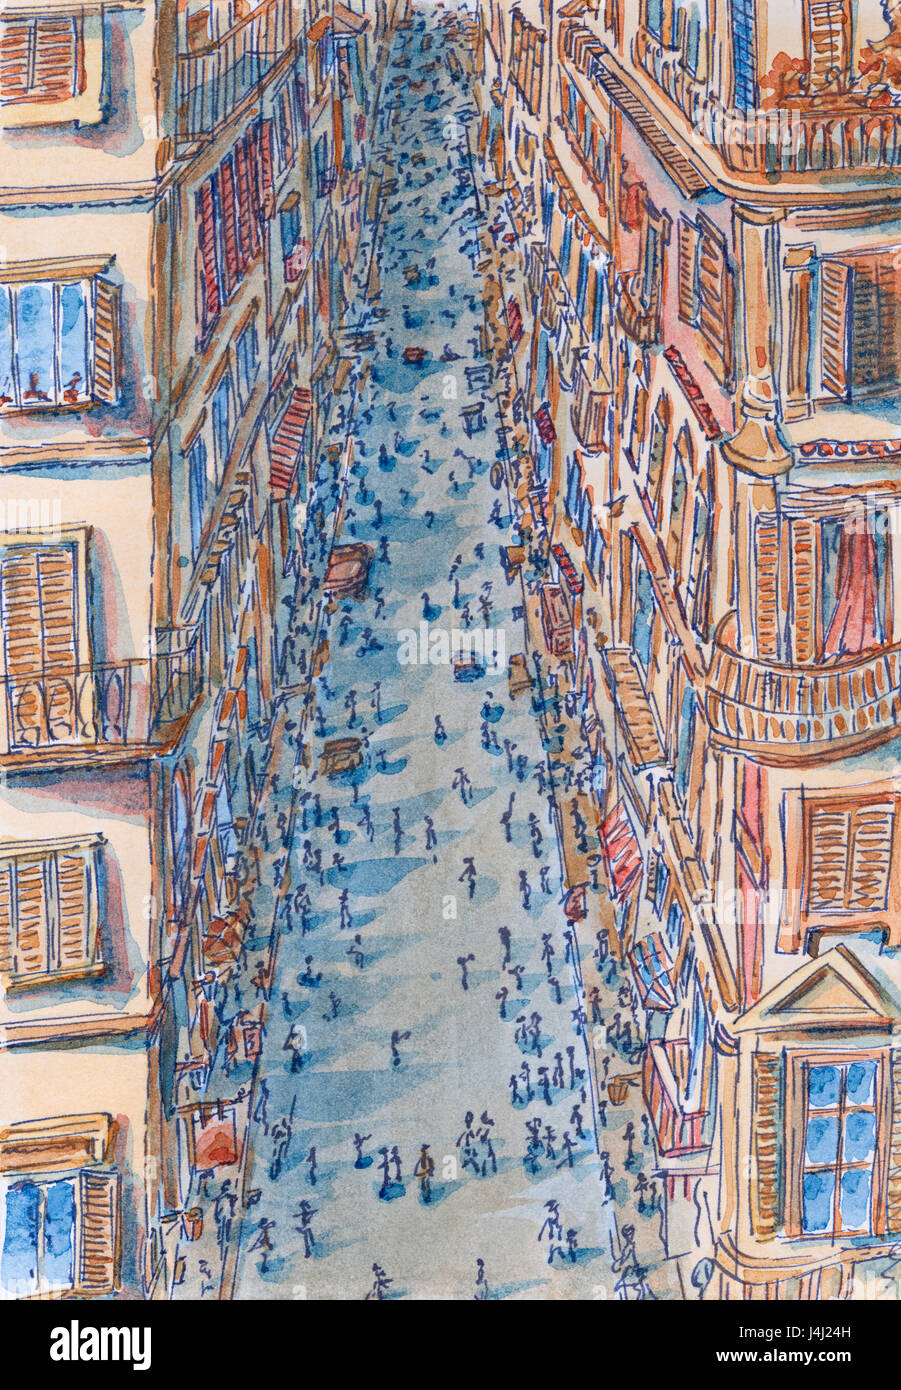 Rue de Rome à high angle view. Lignes de croquis et aquarelle sur papier. Banque D'Images